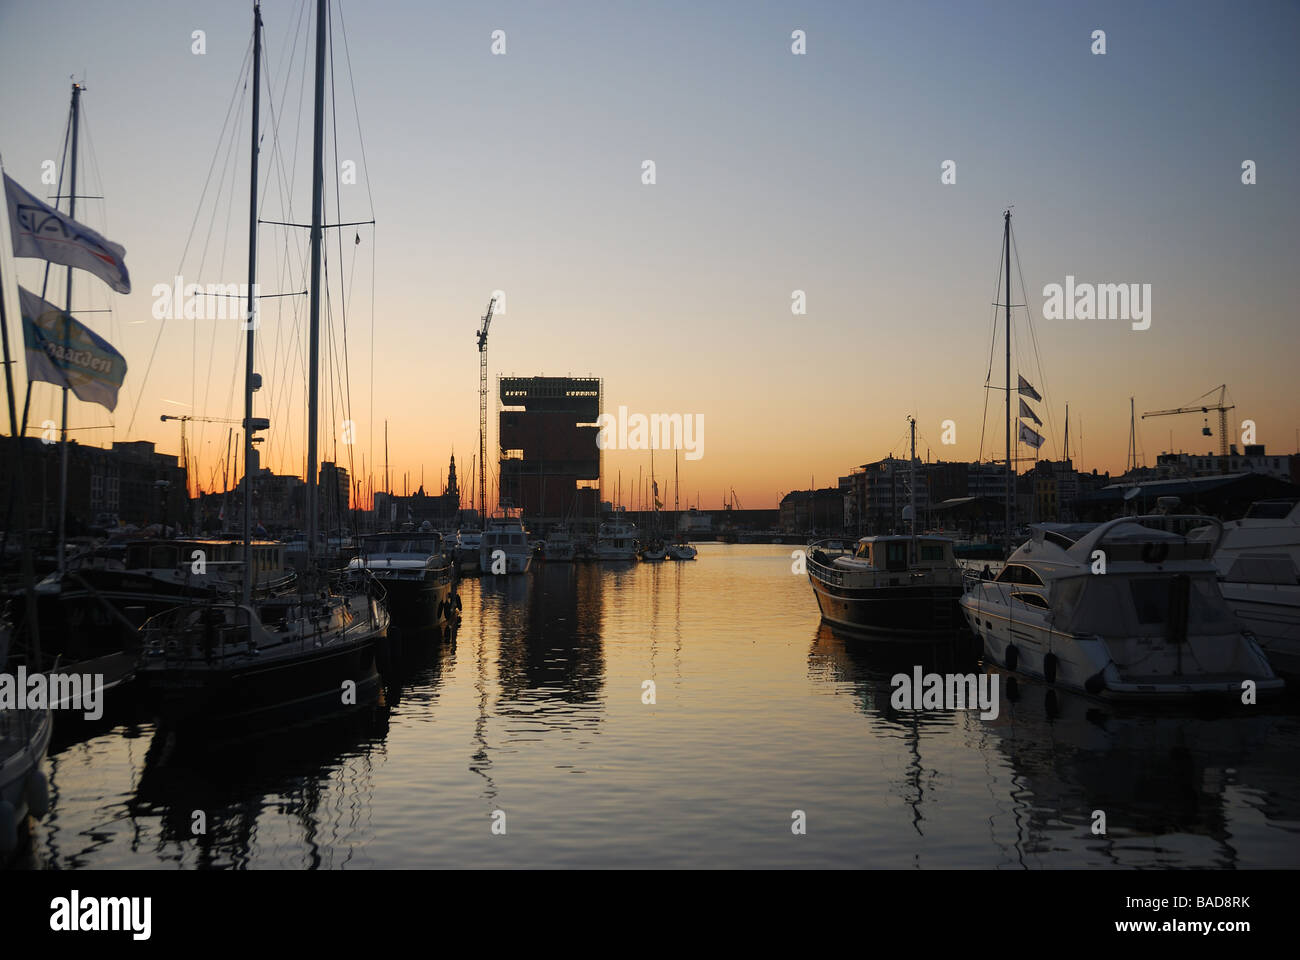 Coucher de soleil sur le port de plaisance (marina) d'Anvers, Belgique. Banque D'Images